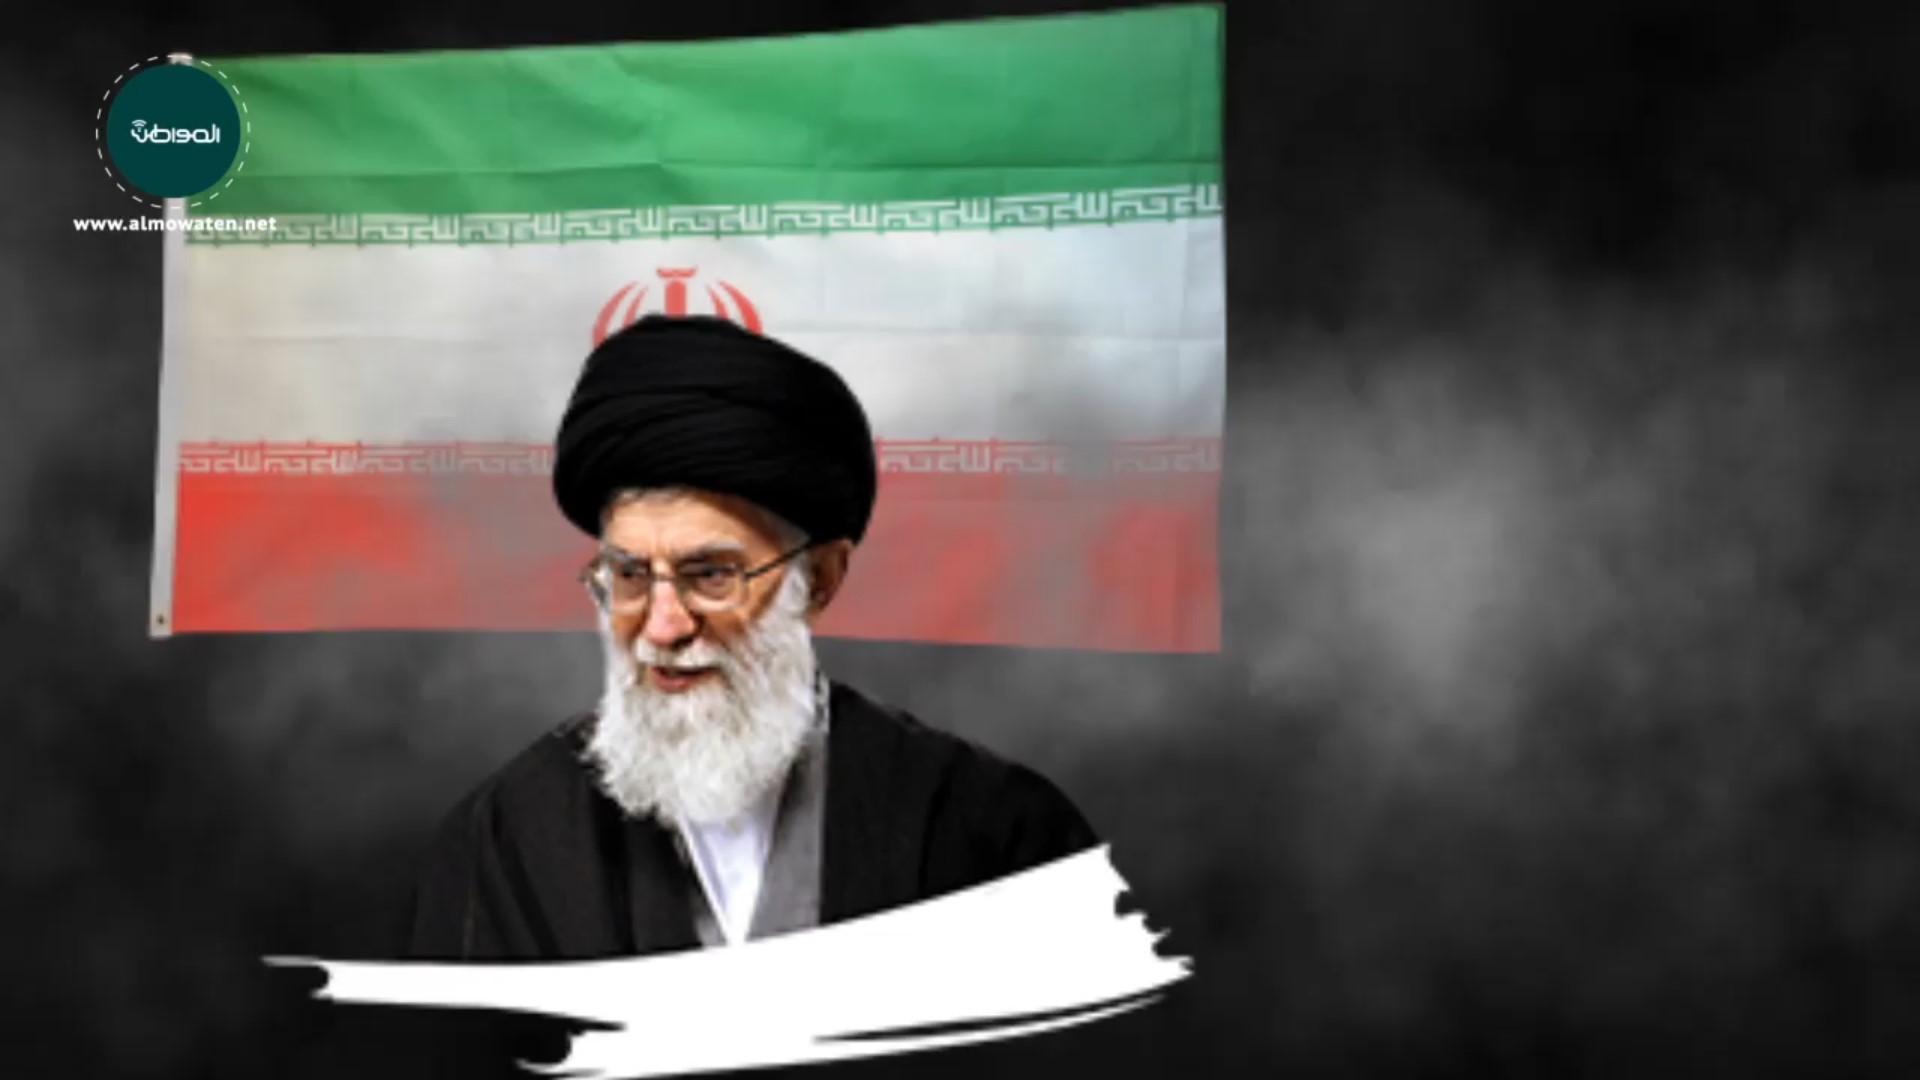 الصبر العالمي ينفد واستفزازات إيران مستمرة!